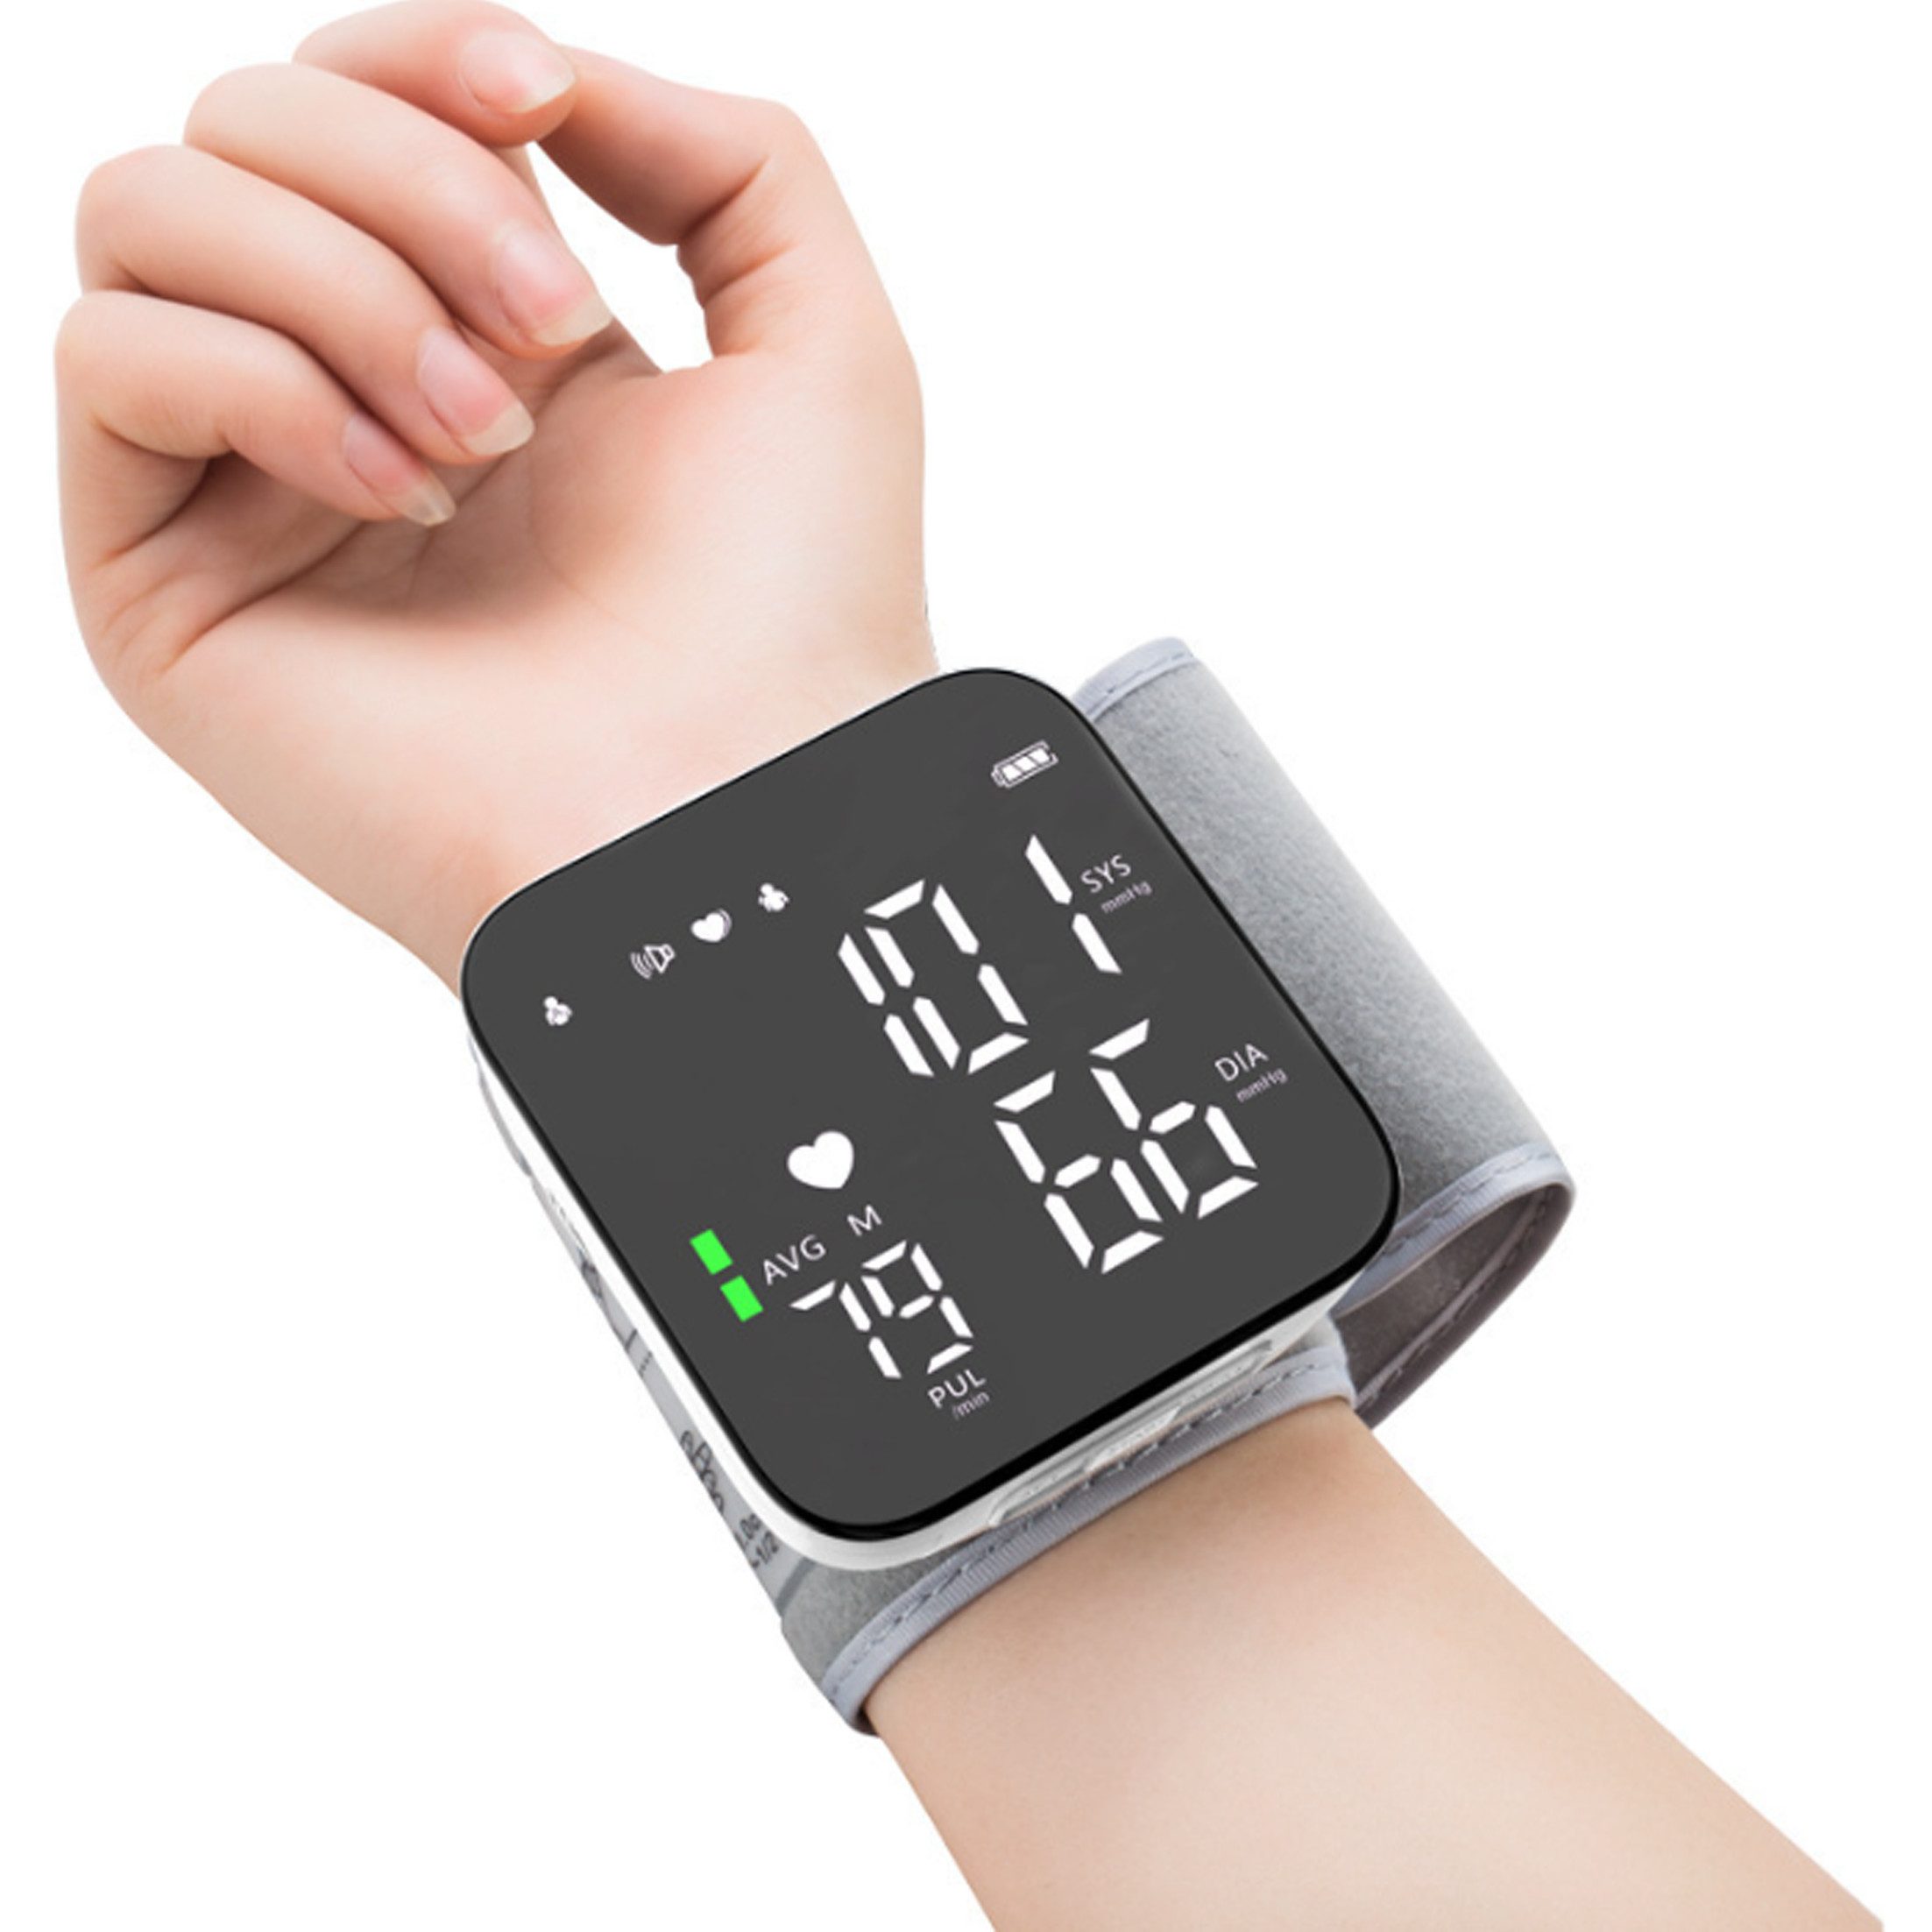 KINSI Handgelenk-Blutdruckmessgerät Elektronisches Blutdruckmessgerät für das Handgelenk,LED-Bildschirm, Es kann von 2 Personen gleichzeitig genutzt werden.